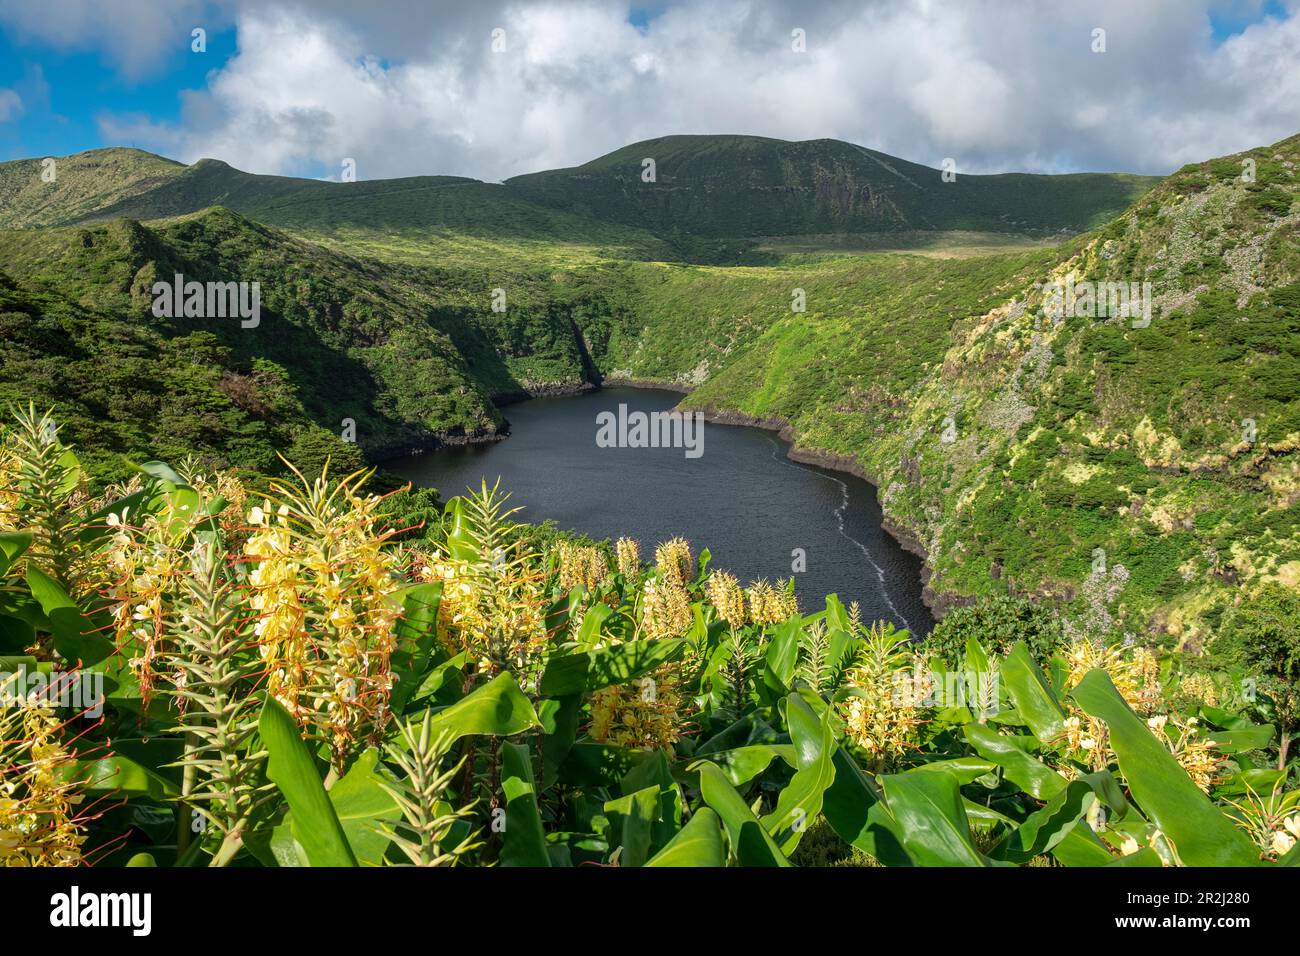 Lagoa Comprida lago vulcanico circondato da vegetazione e fiori di giglio zenzero in una giornata di sole, Flores isola, Azzorre isole, Portogallo, Oceano Atlantico Foto Stock